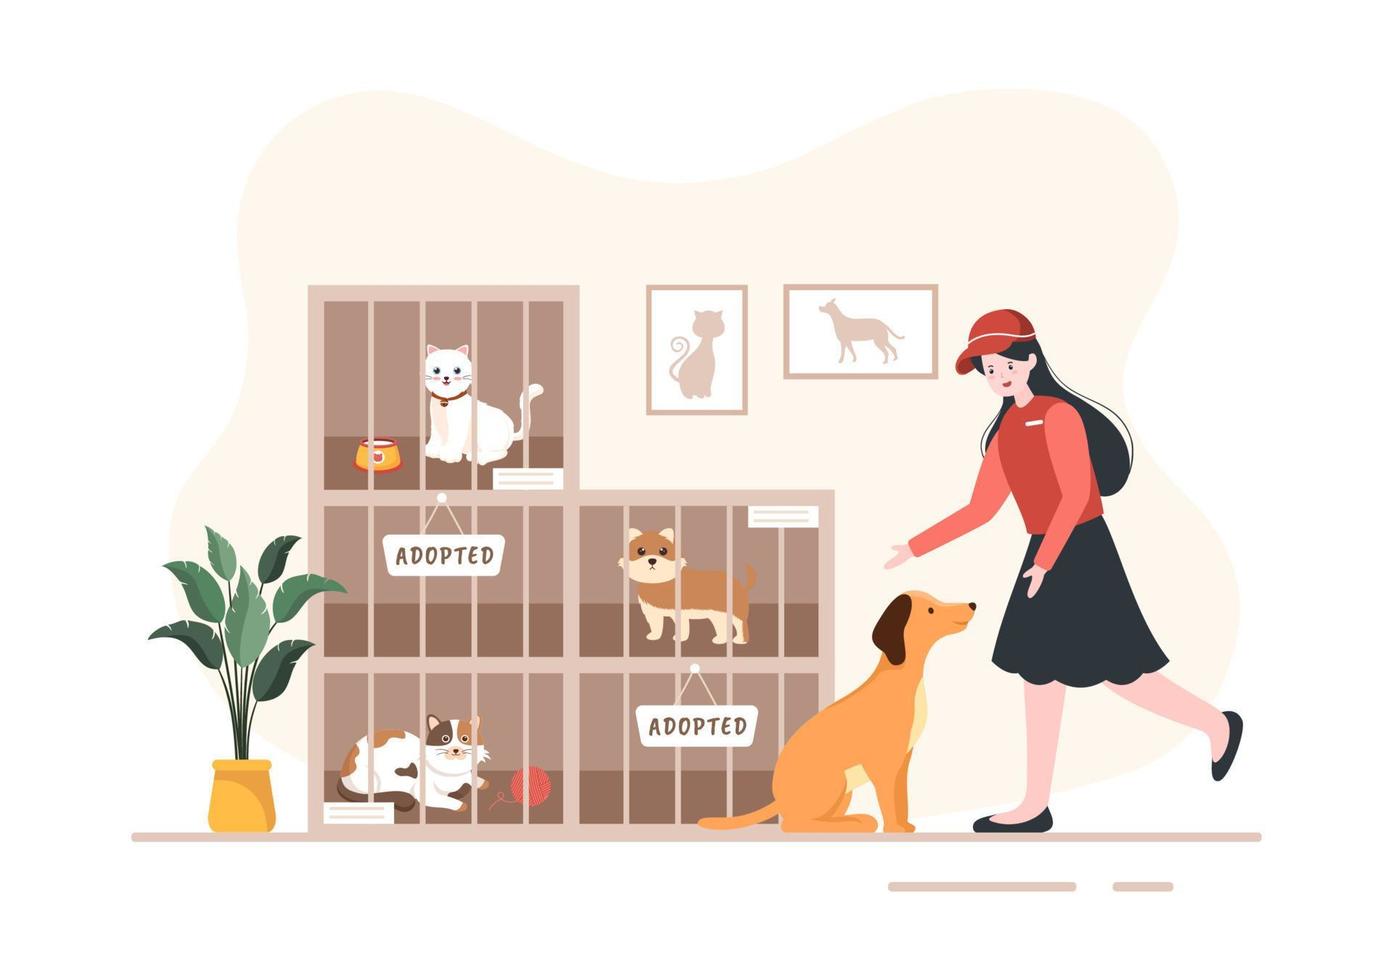 djurhem tecknad illustration med husdjur som sitter i burar och volontärer som matar djur för att adoptera i platt handritad stildesign vektor